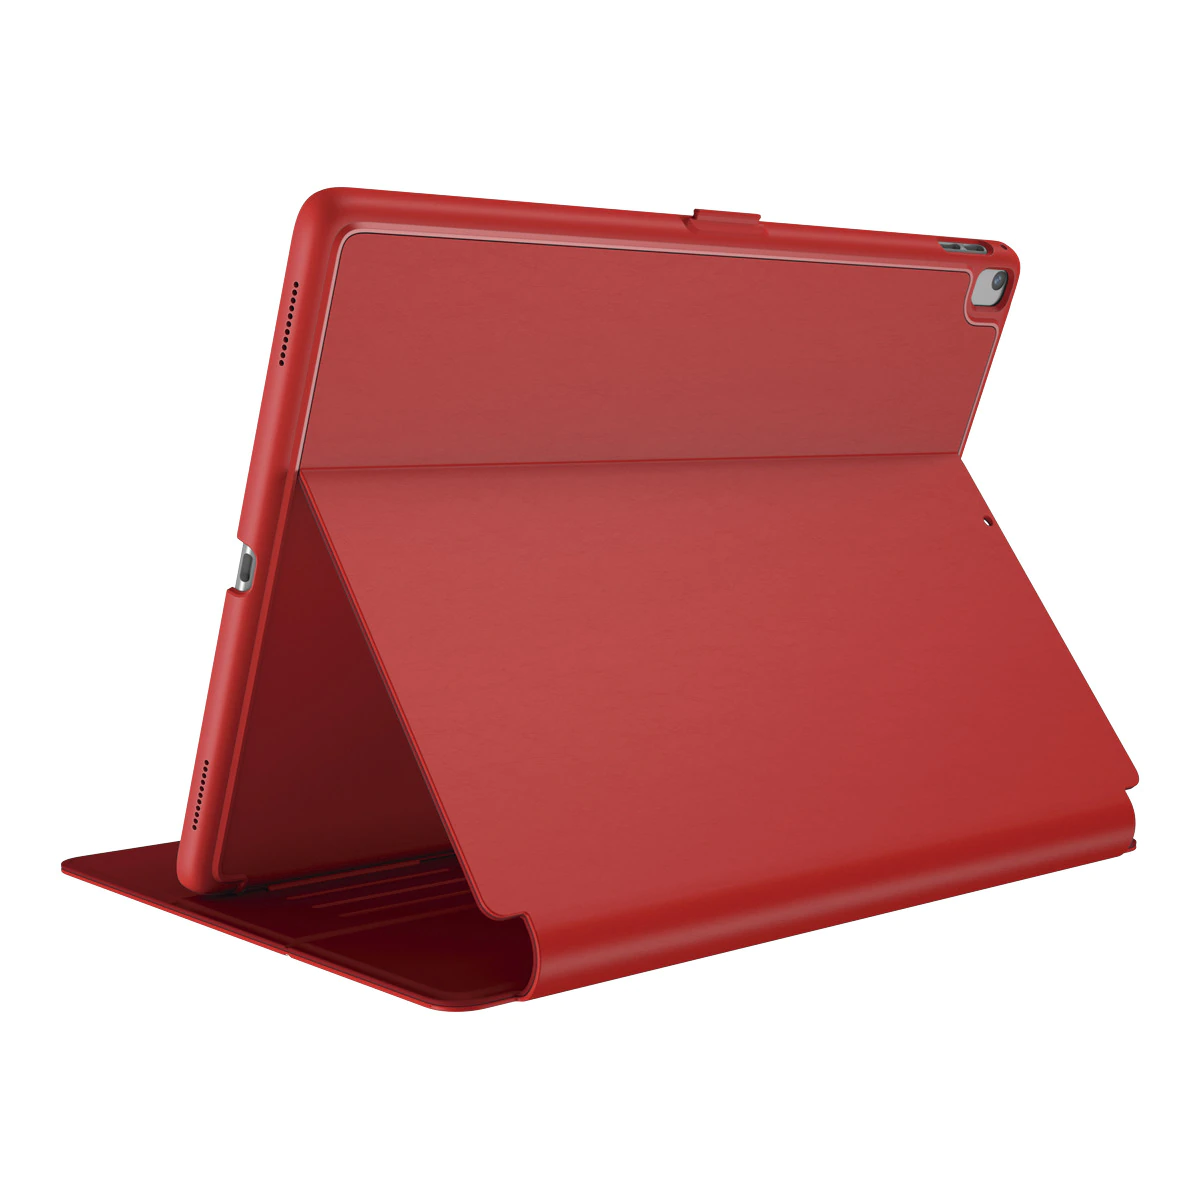 Carcasa Protectora Speck Balance Folio para iPad 2017 de 24,63 cm (9,7») rojo